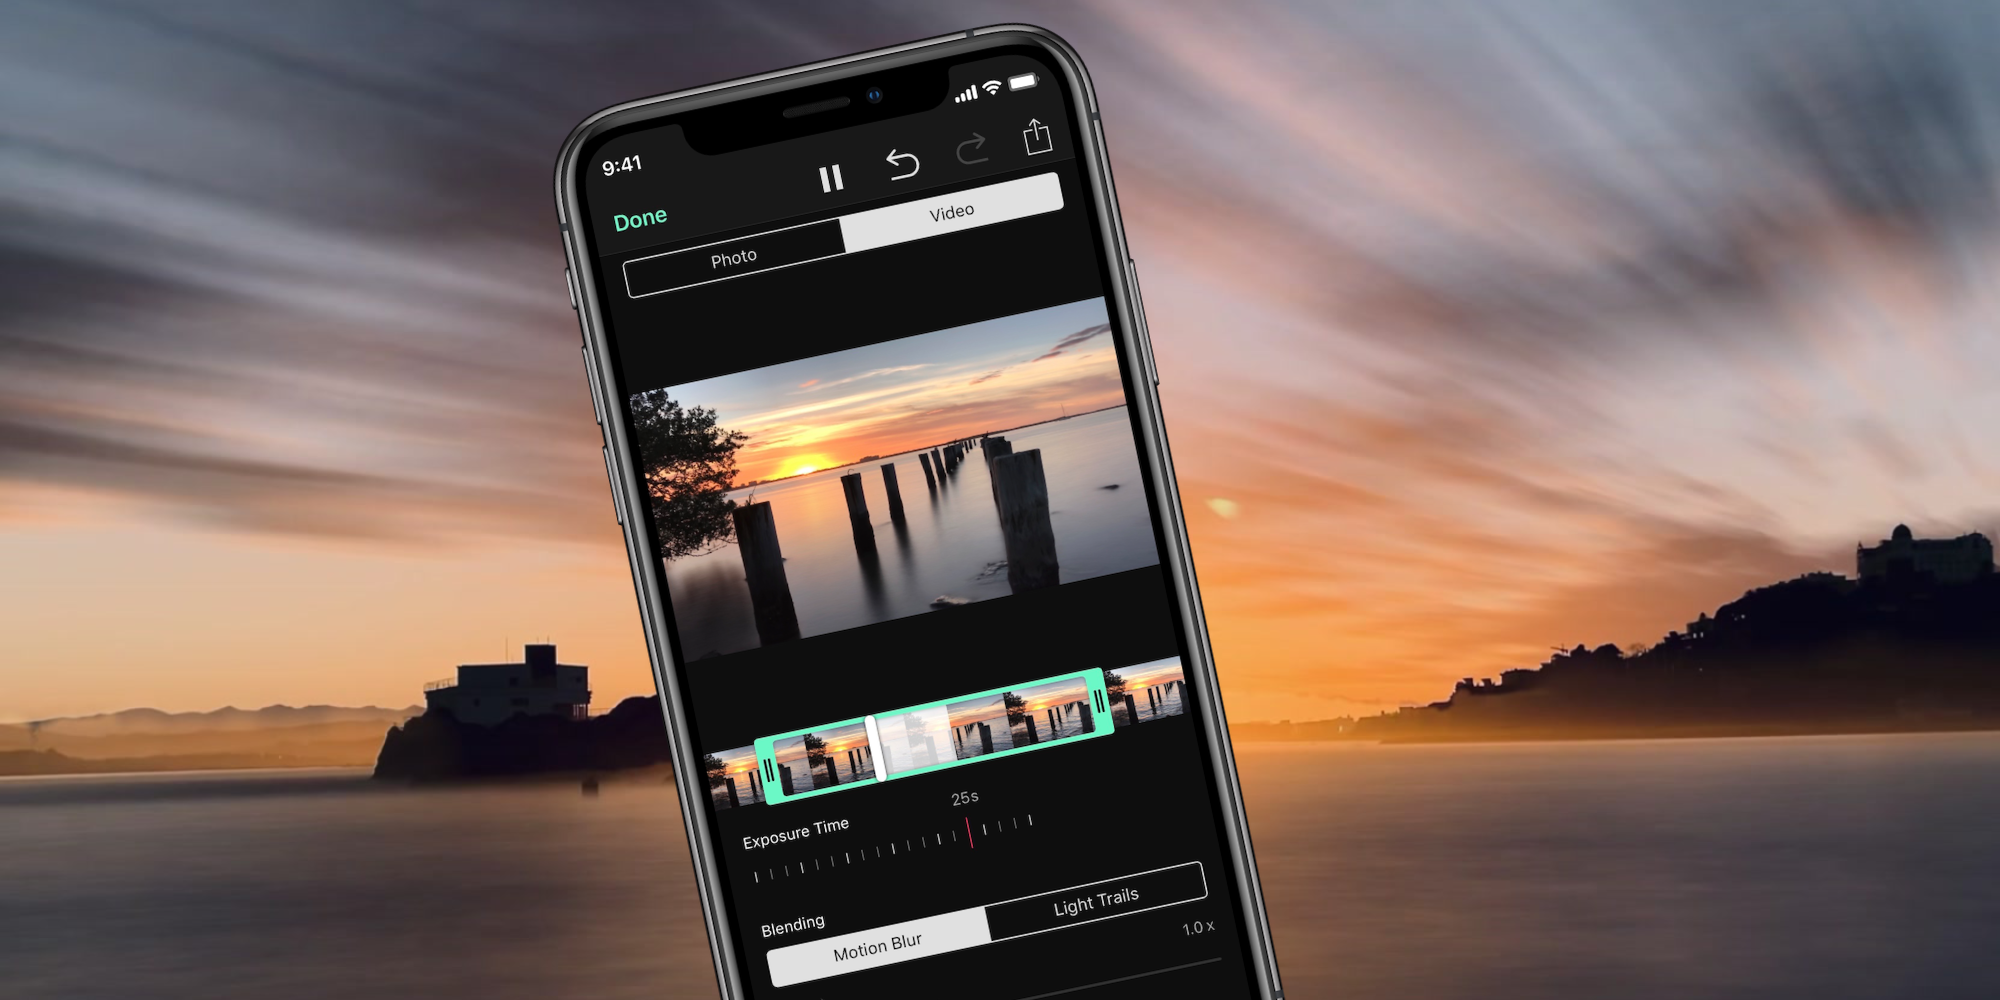 Su iPhone puede grabar videos secuenciales similares a películas con esta aplicación